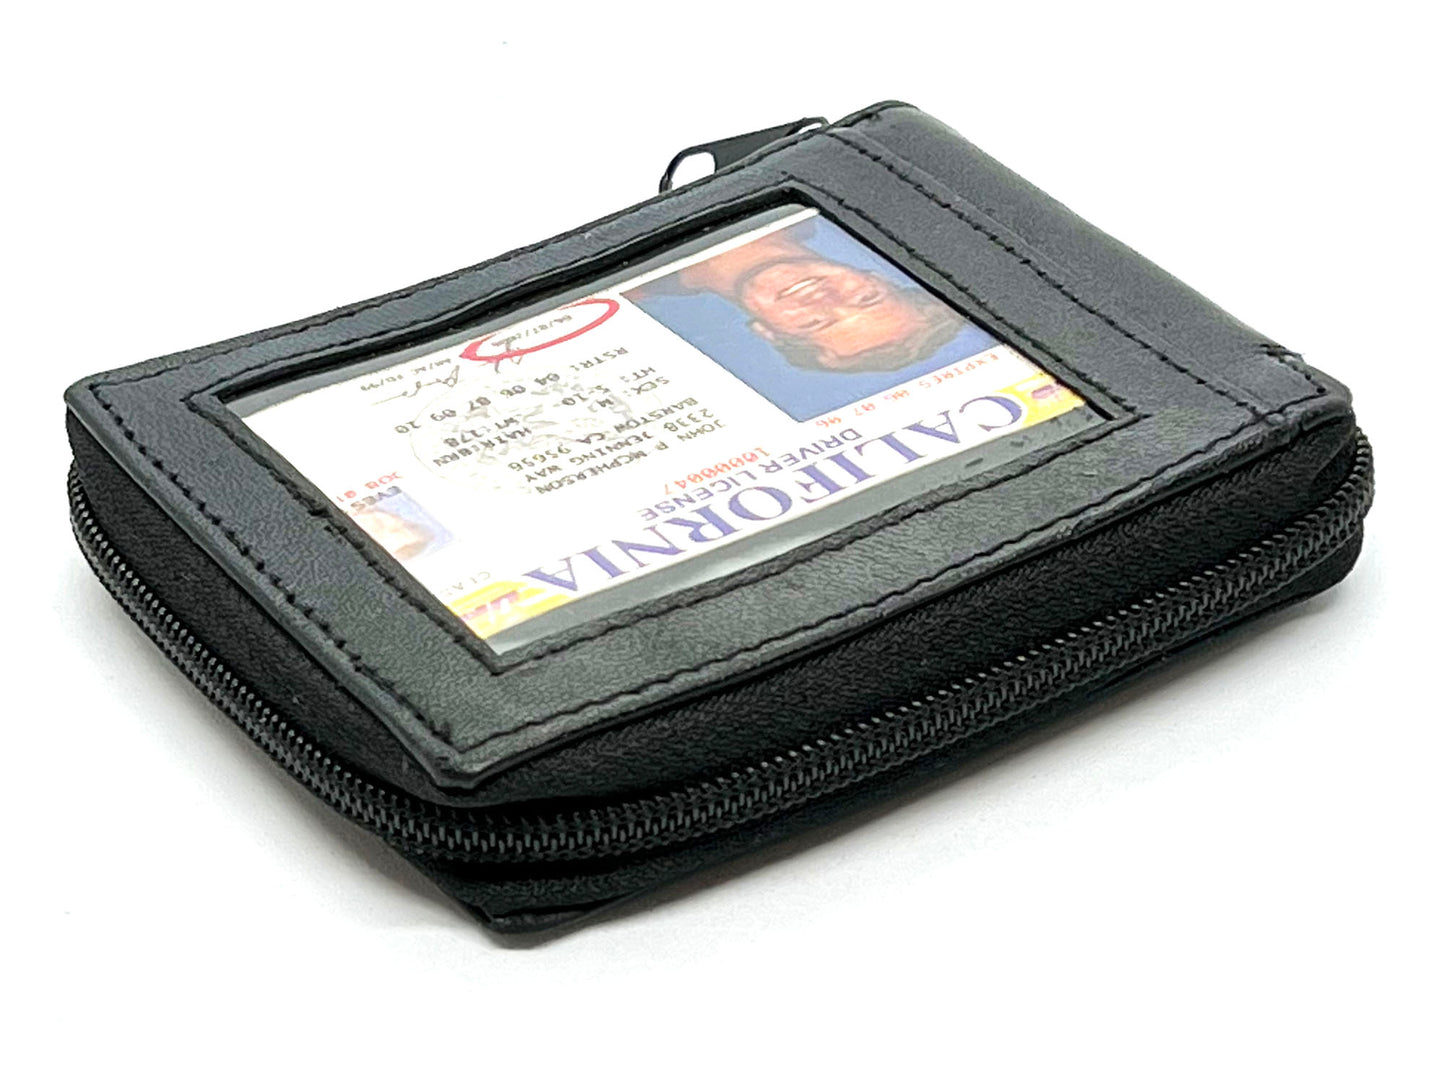 Genuine Leather Men's Bifold Wallet Credit Card Holder Zip Around Clear Card Insert